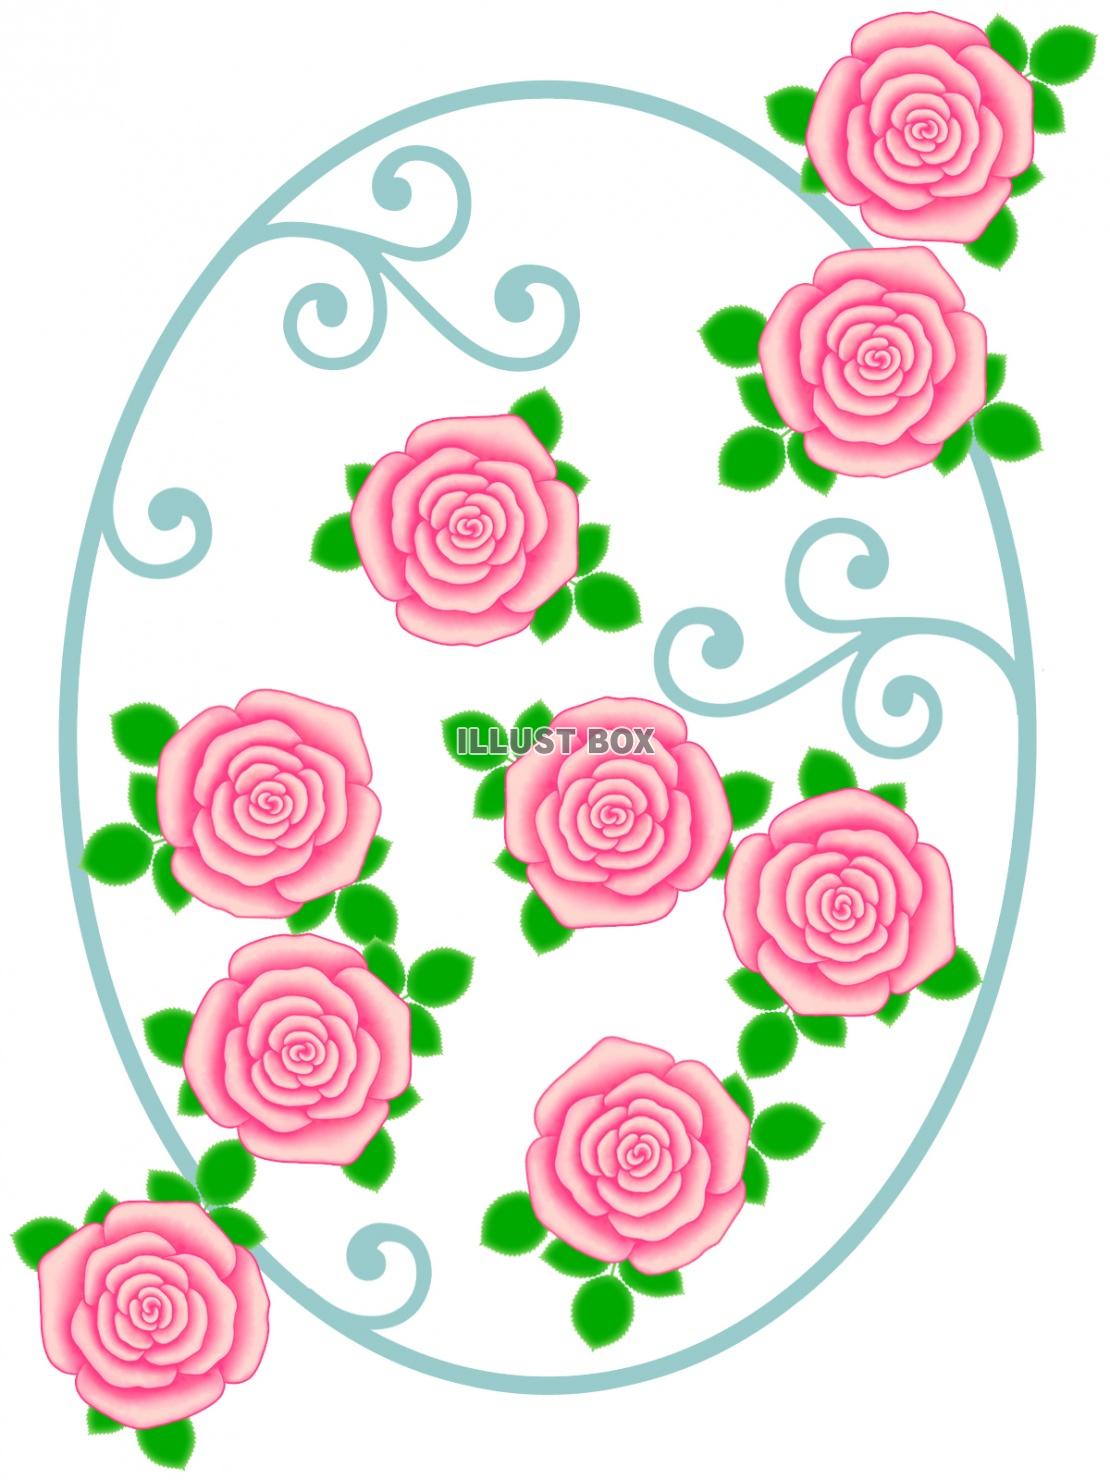 薔薇の花模様壁紙画像シンプル背景素材イラスト